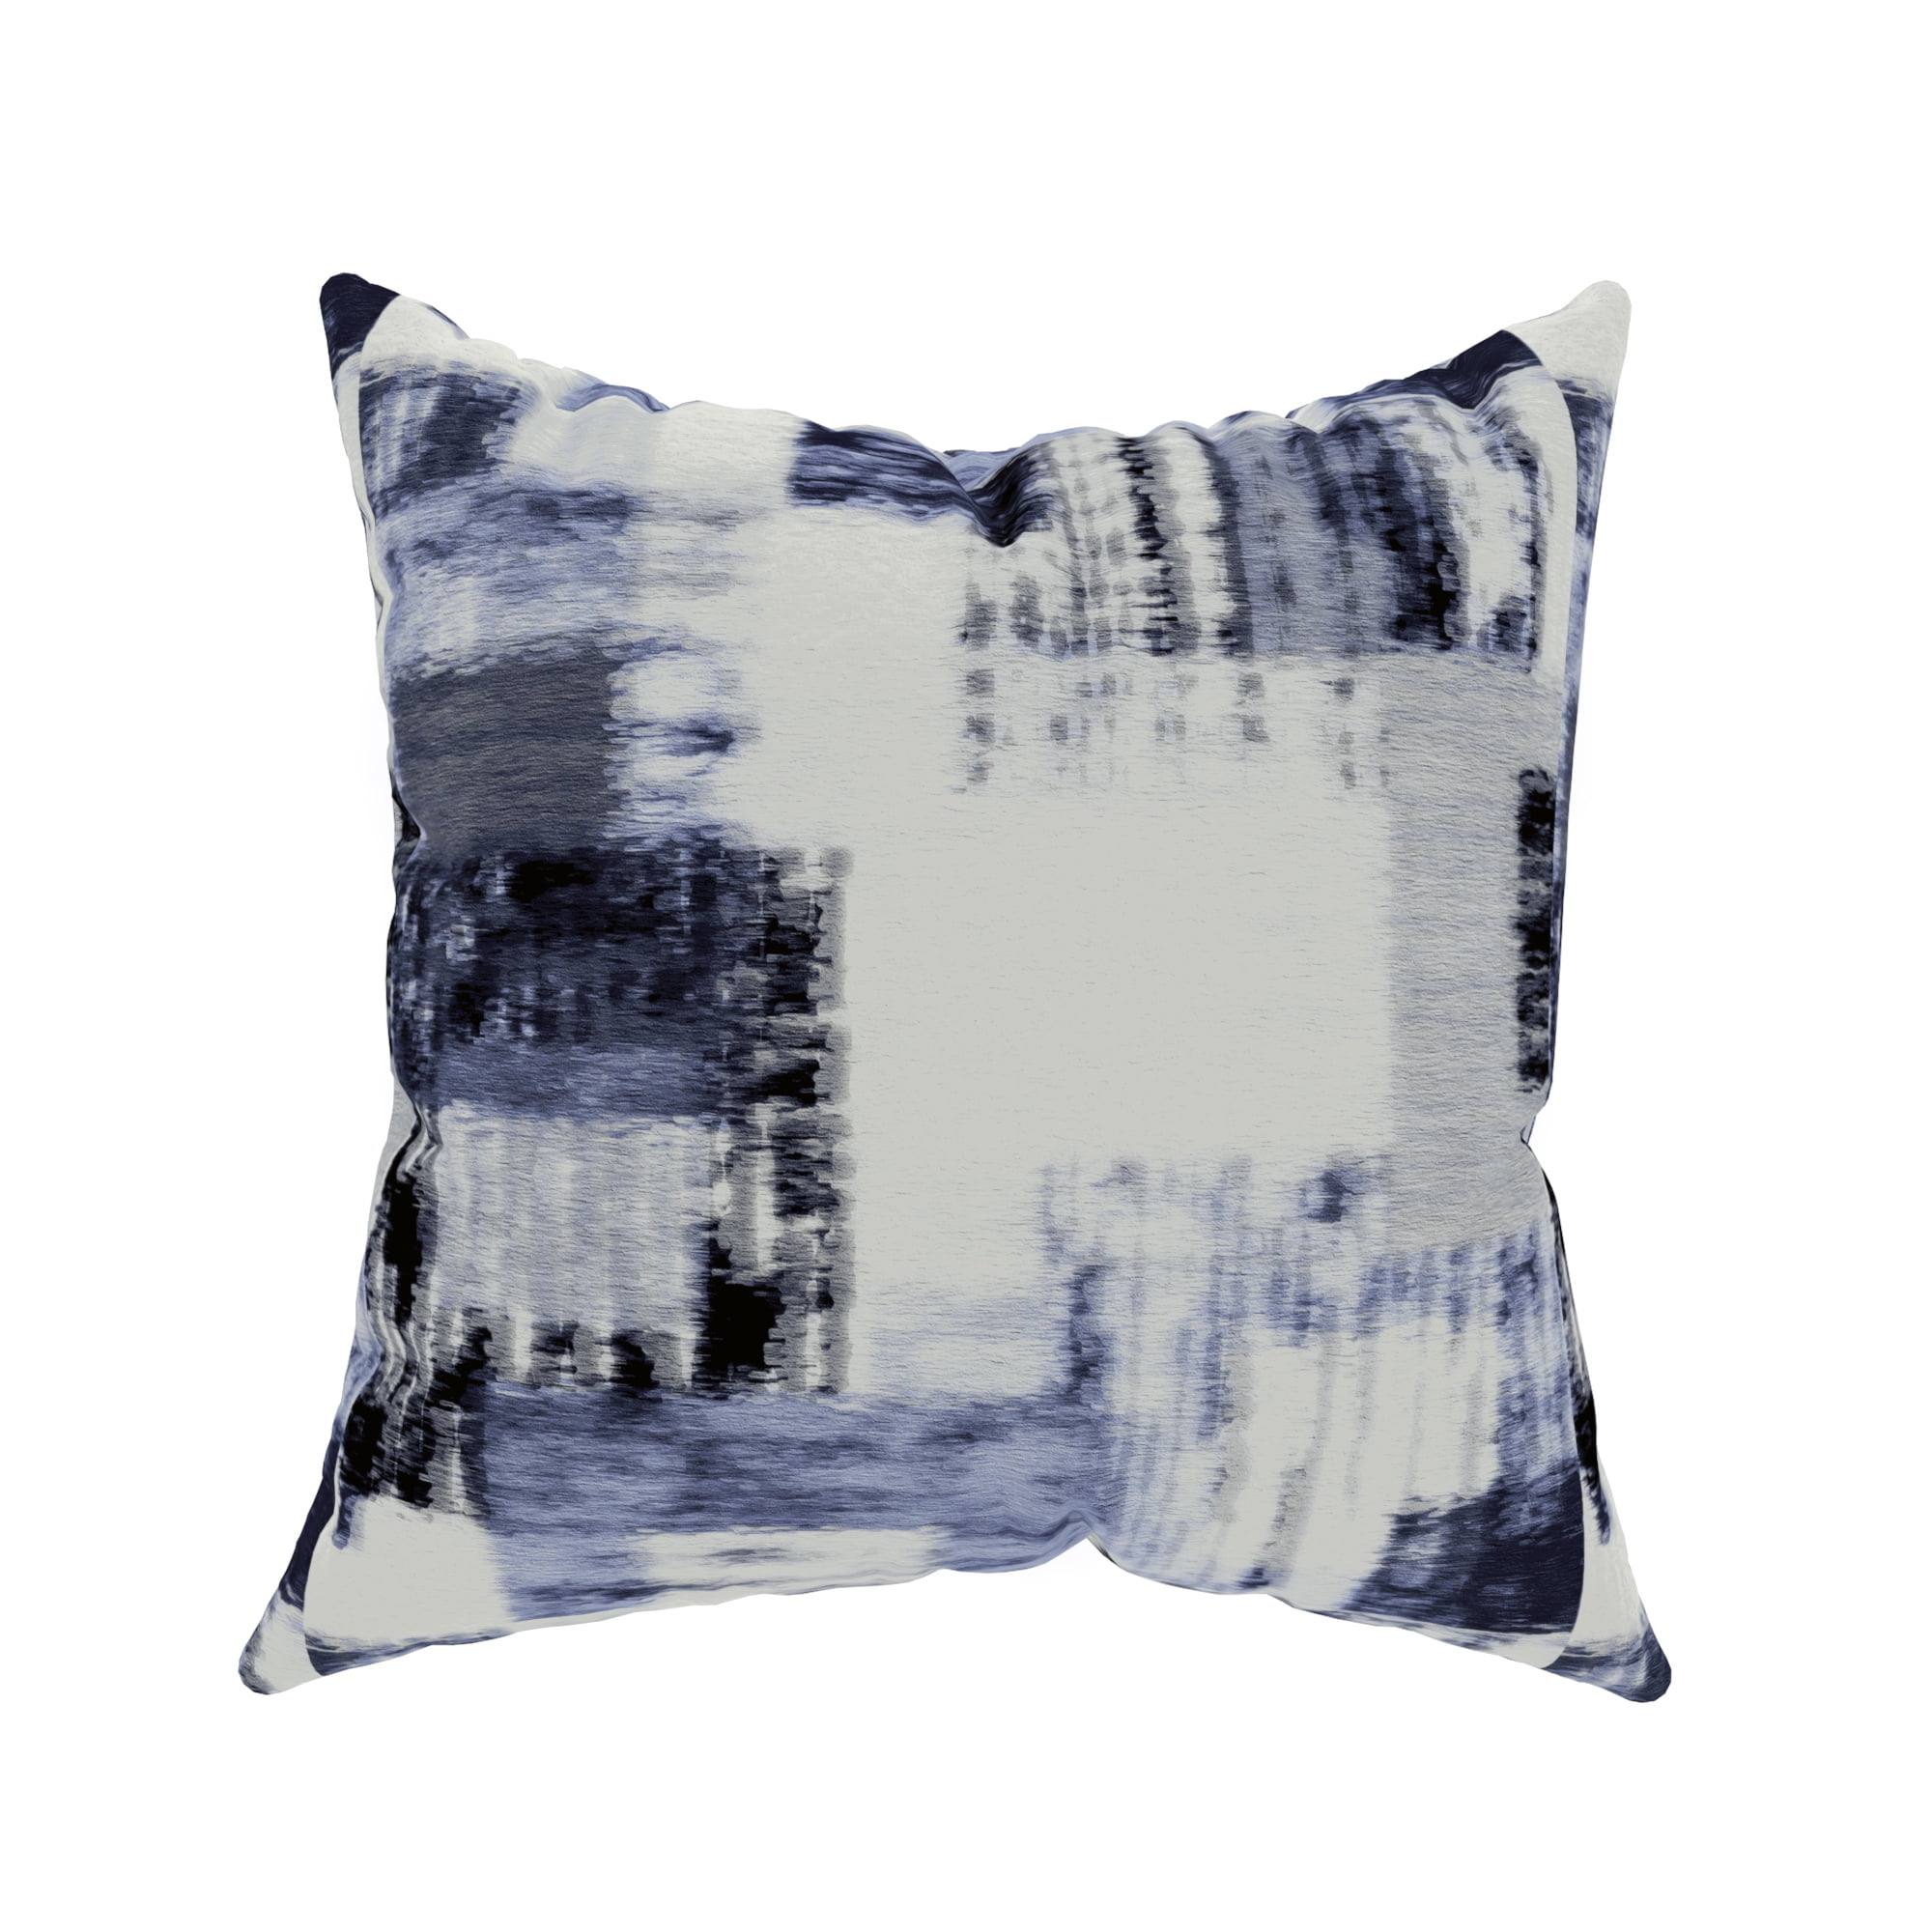 Blue Simple Pattern Pillow Cases Sofa Car Waist Cushion Throw Cover Home Decor